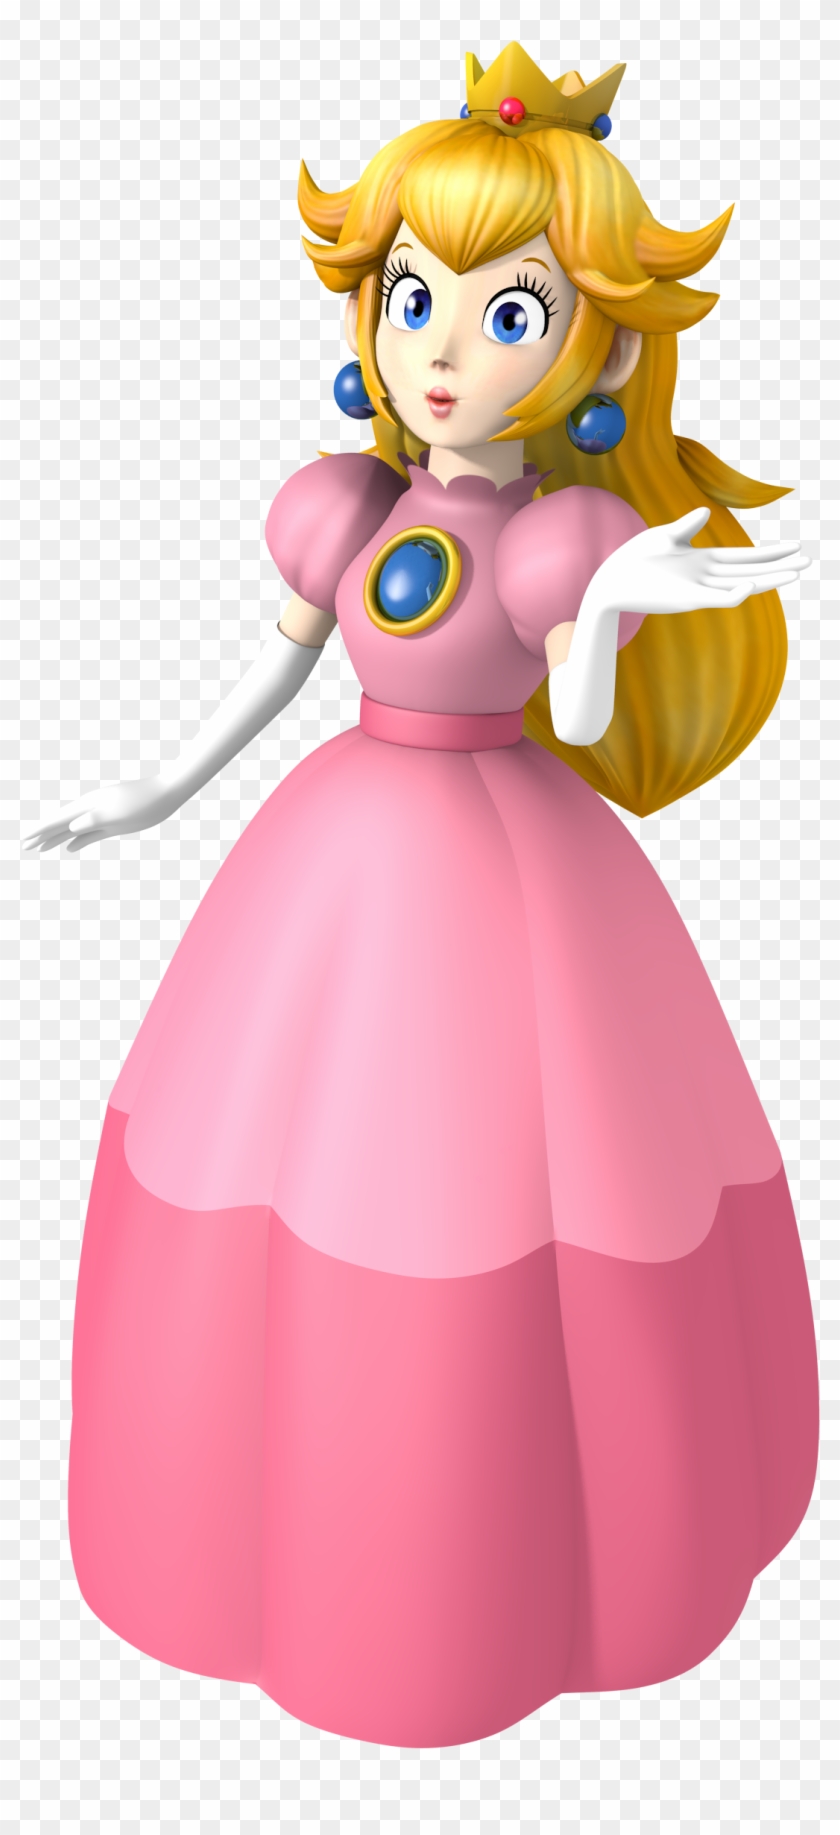 Princess Peach - Mario Party 3 Peach #470570